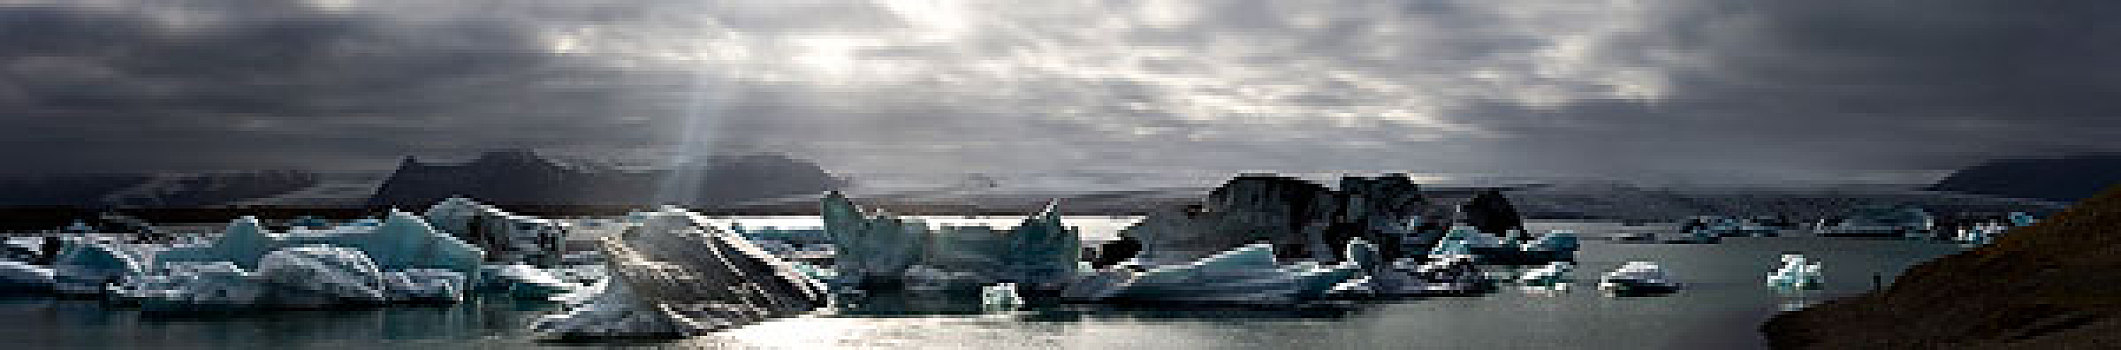 冰河,泻湖,杰古沙龙湖,正面,瓦特纳冰川,全景,西南海岸,冰岛,欧洲